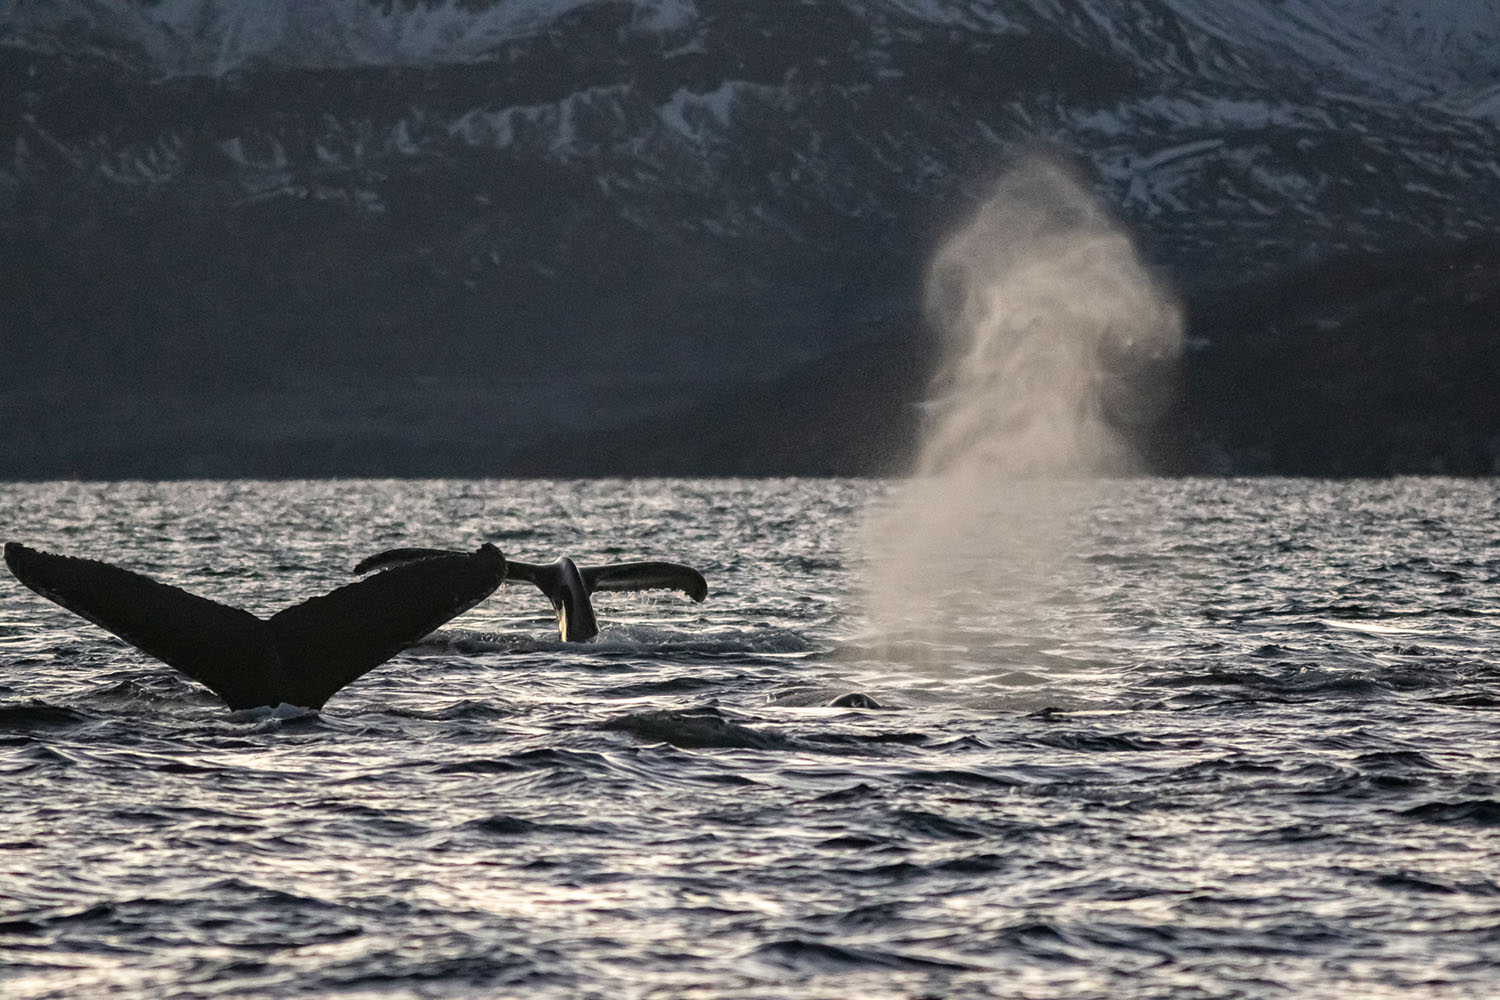 Baleine à bosse observée dans les fjords norvégiens enneigés lors des lumières hivernales lors de la Croisière scientifique à la voile sur les orques et baleines à bosse de Norvège -copyright SailNorway